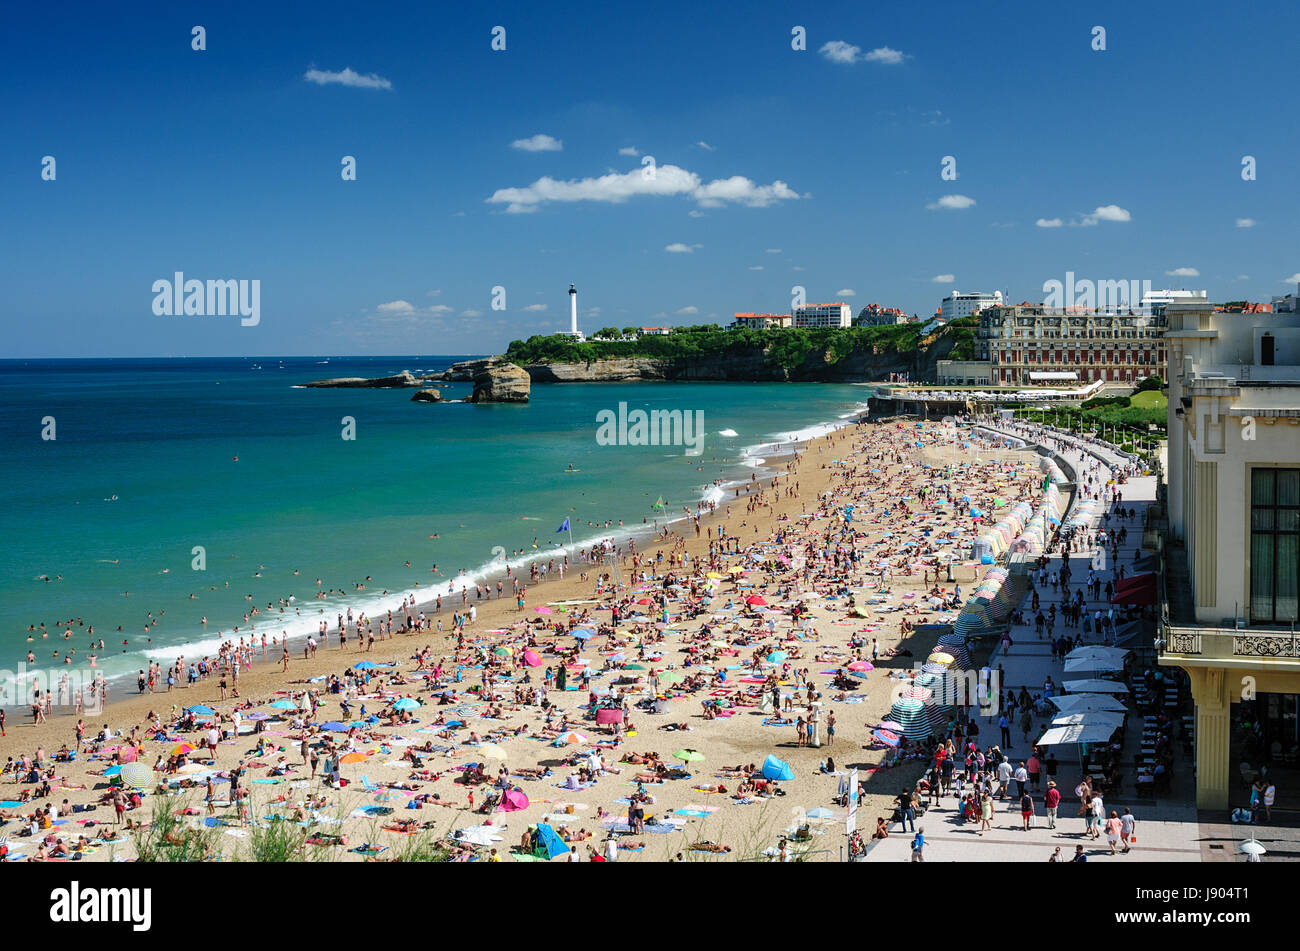 La grande plage pleine de gens en été, la plage de Biarritz, Aquitaine, France Banque D'Images